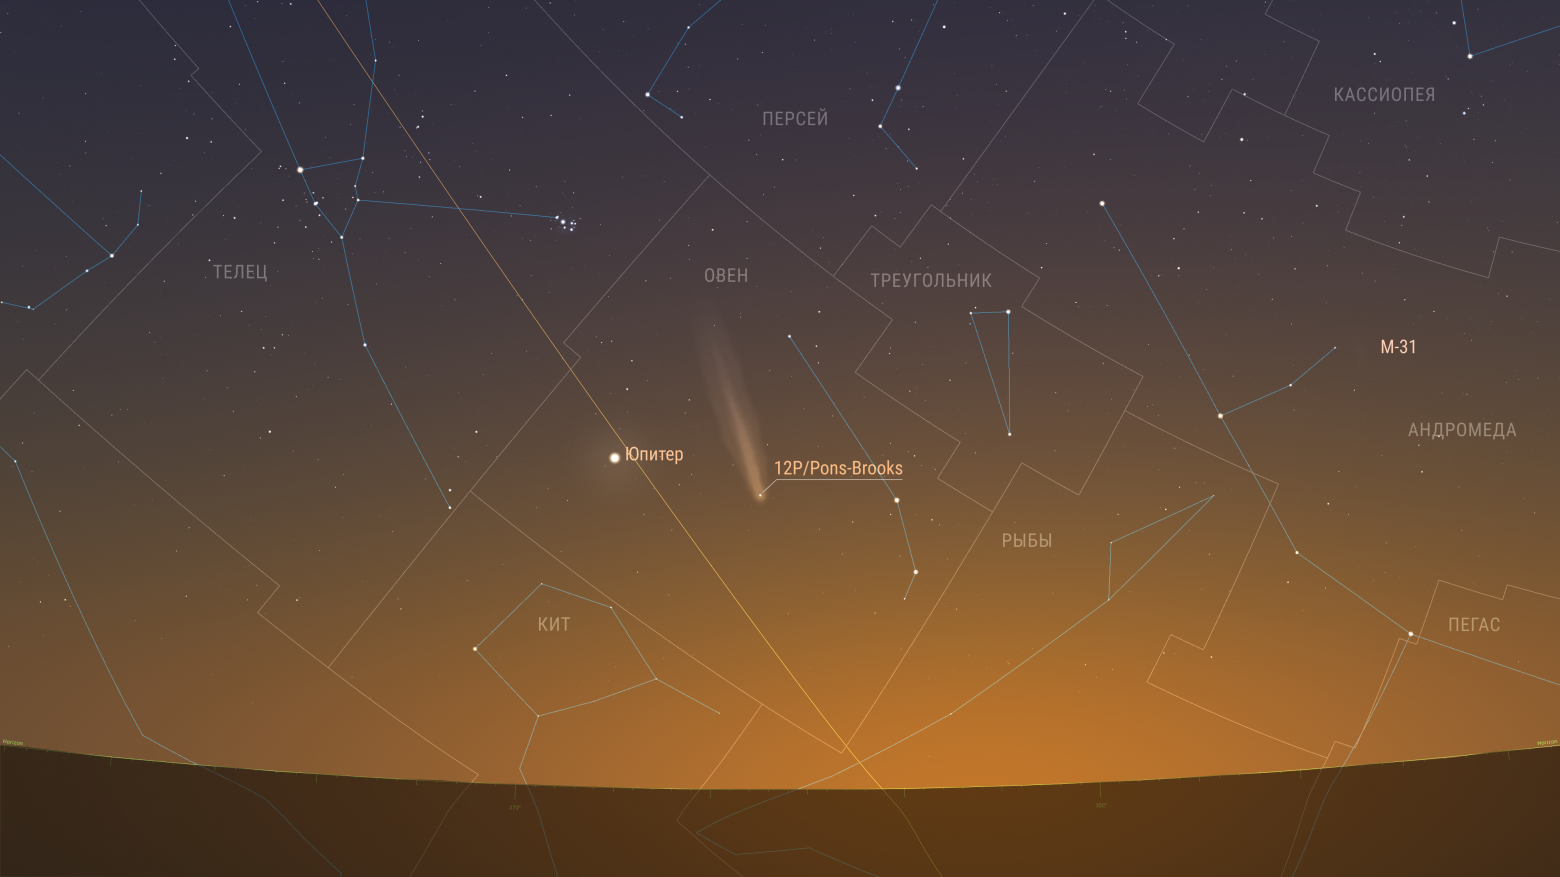 Комета продолжает движение по созвездию Овна и постепенно сближается с Юпитером. Высота над горизонтом к началу видимости уже менее 15 градусов. Предполагаемая звездная величина 4,00m. Элонгация 25 градусов.